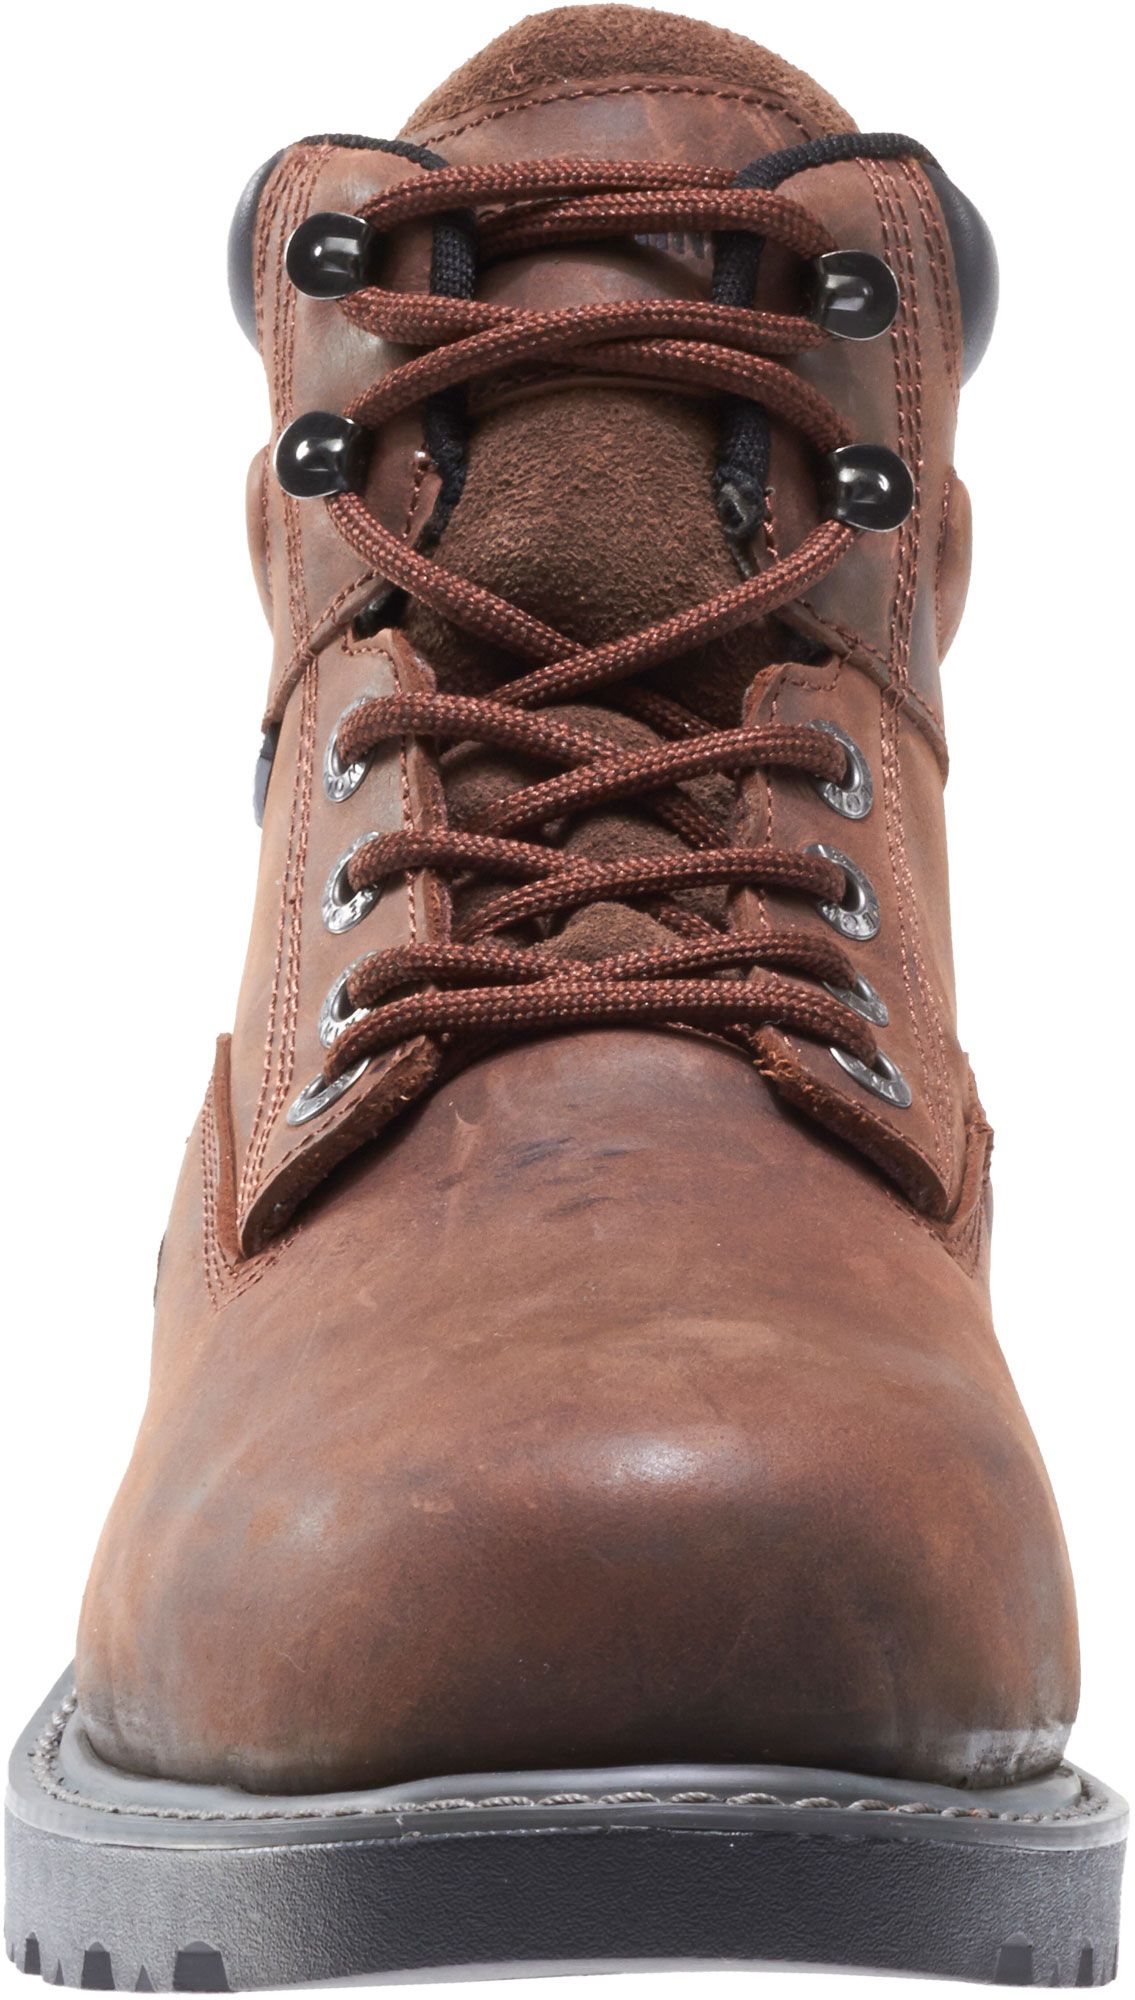 wolverine floorhand work boots